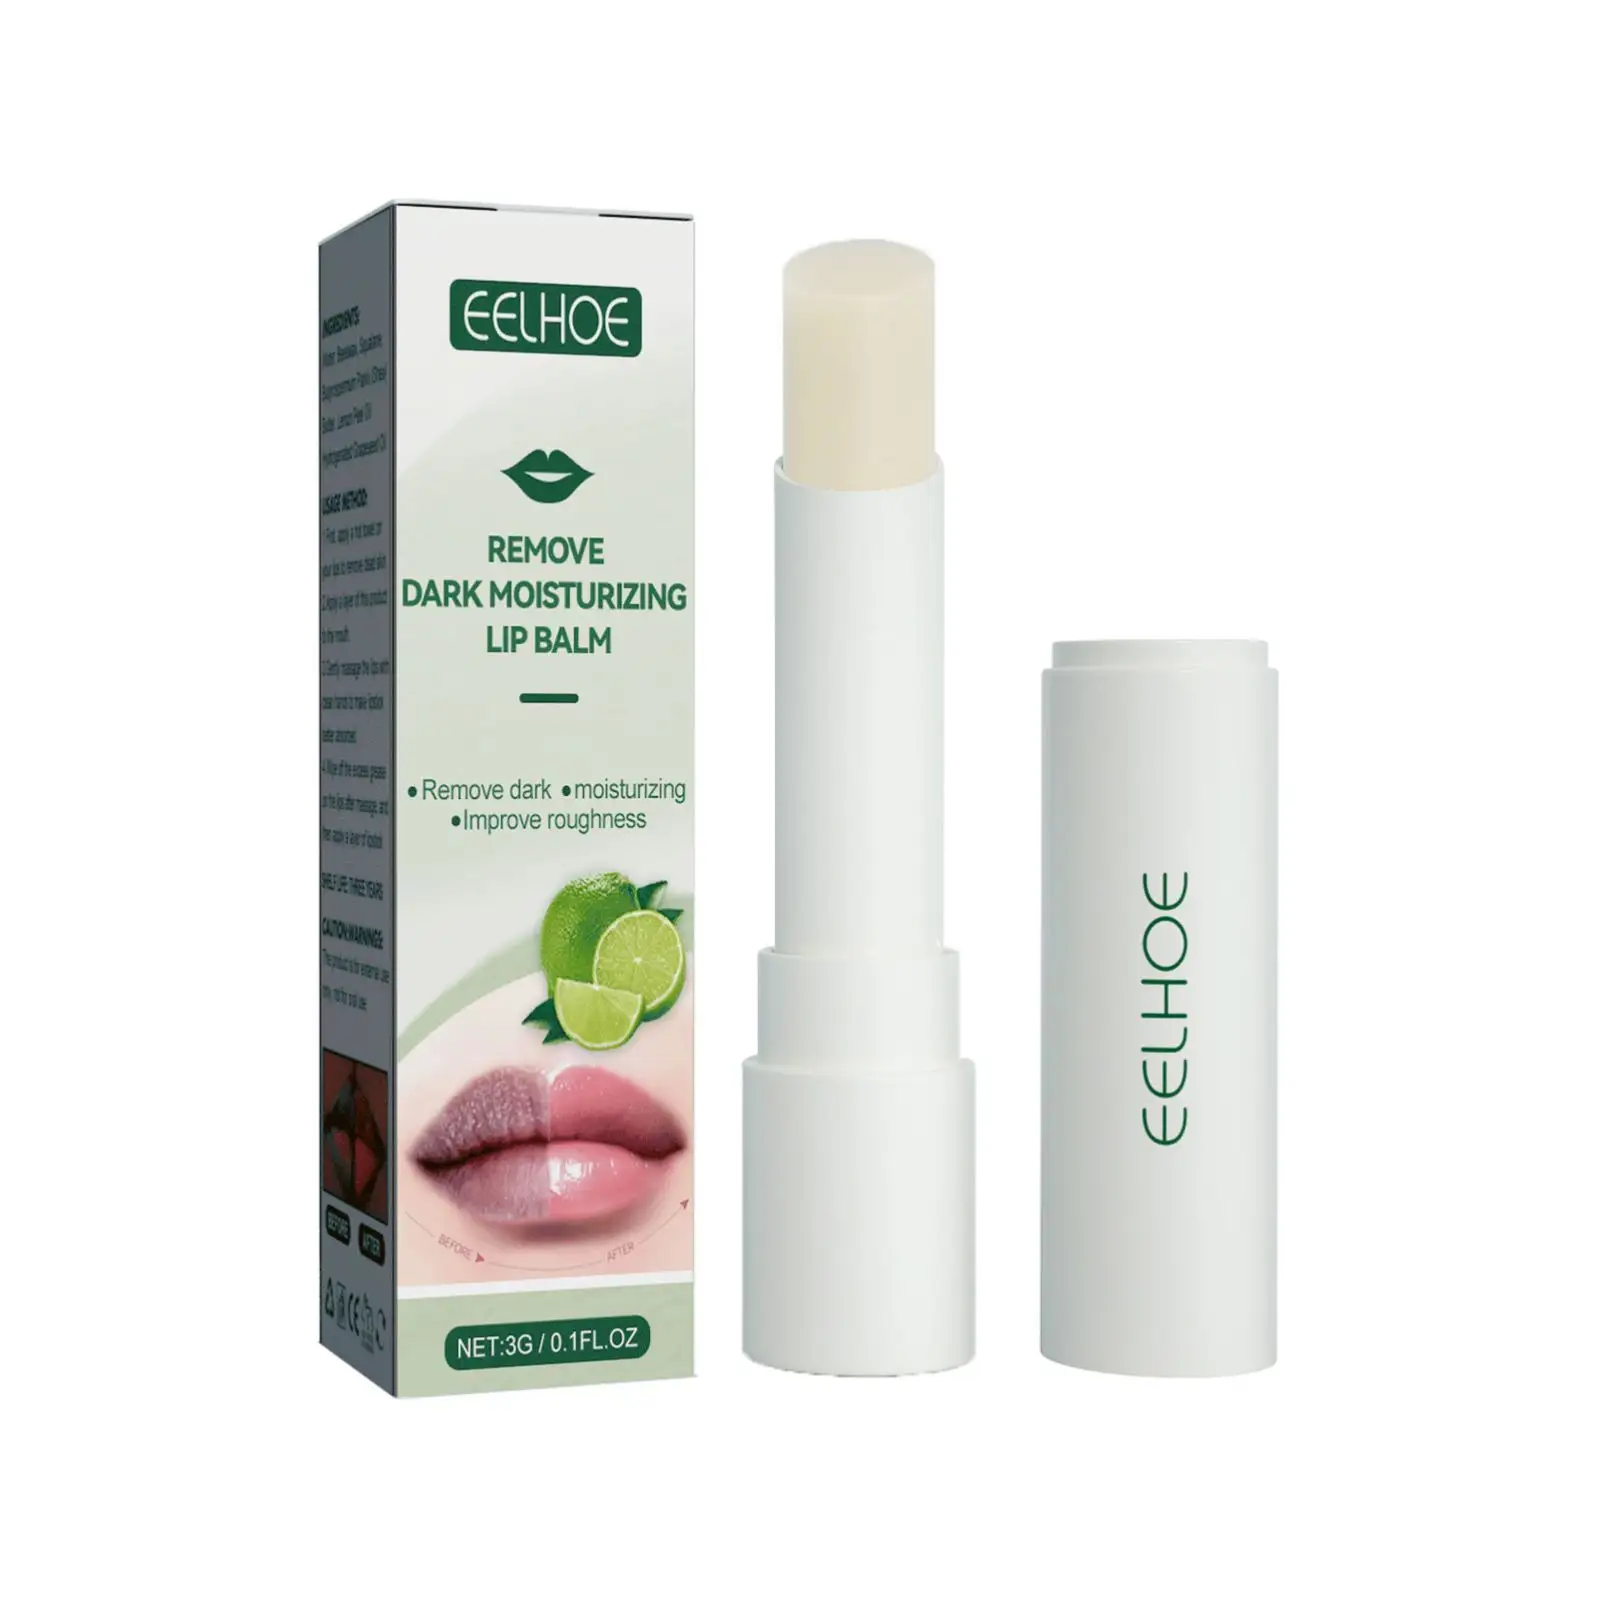 EELHOE Baume éclaircissant pour les lèvres Remove Dark Moisturizer Brighten Lip Balm Reduce Pigmentation Exfolier Fadedulllness Plump Lips